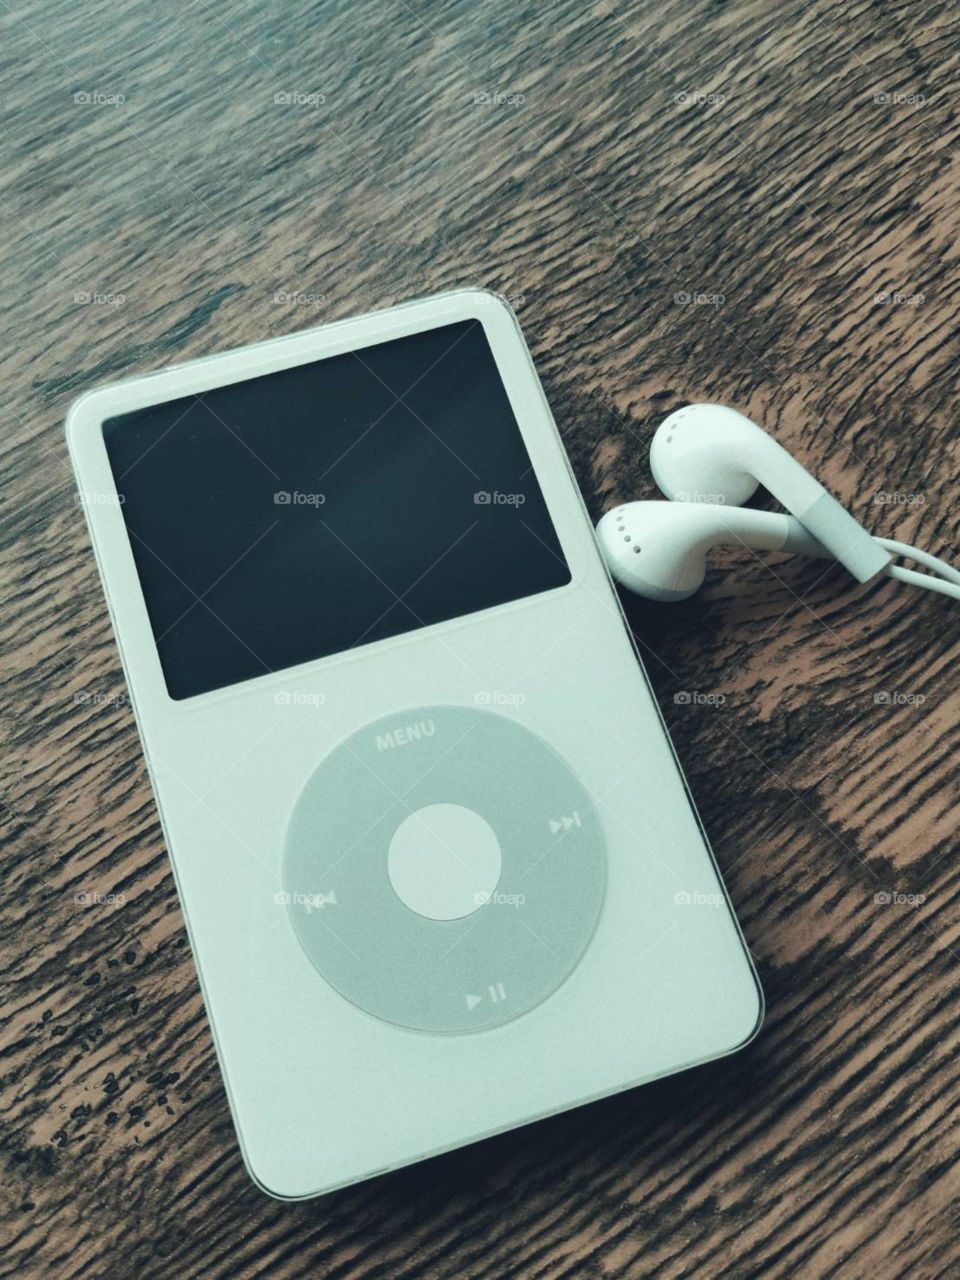 Apple iPod classic 